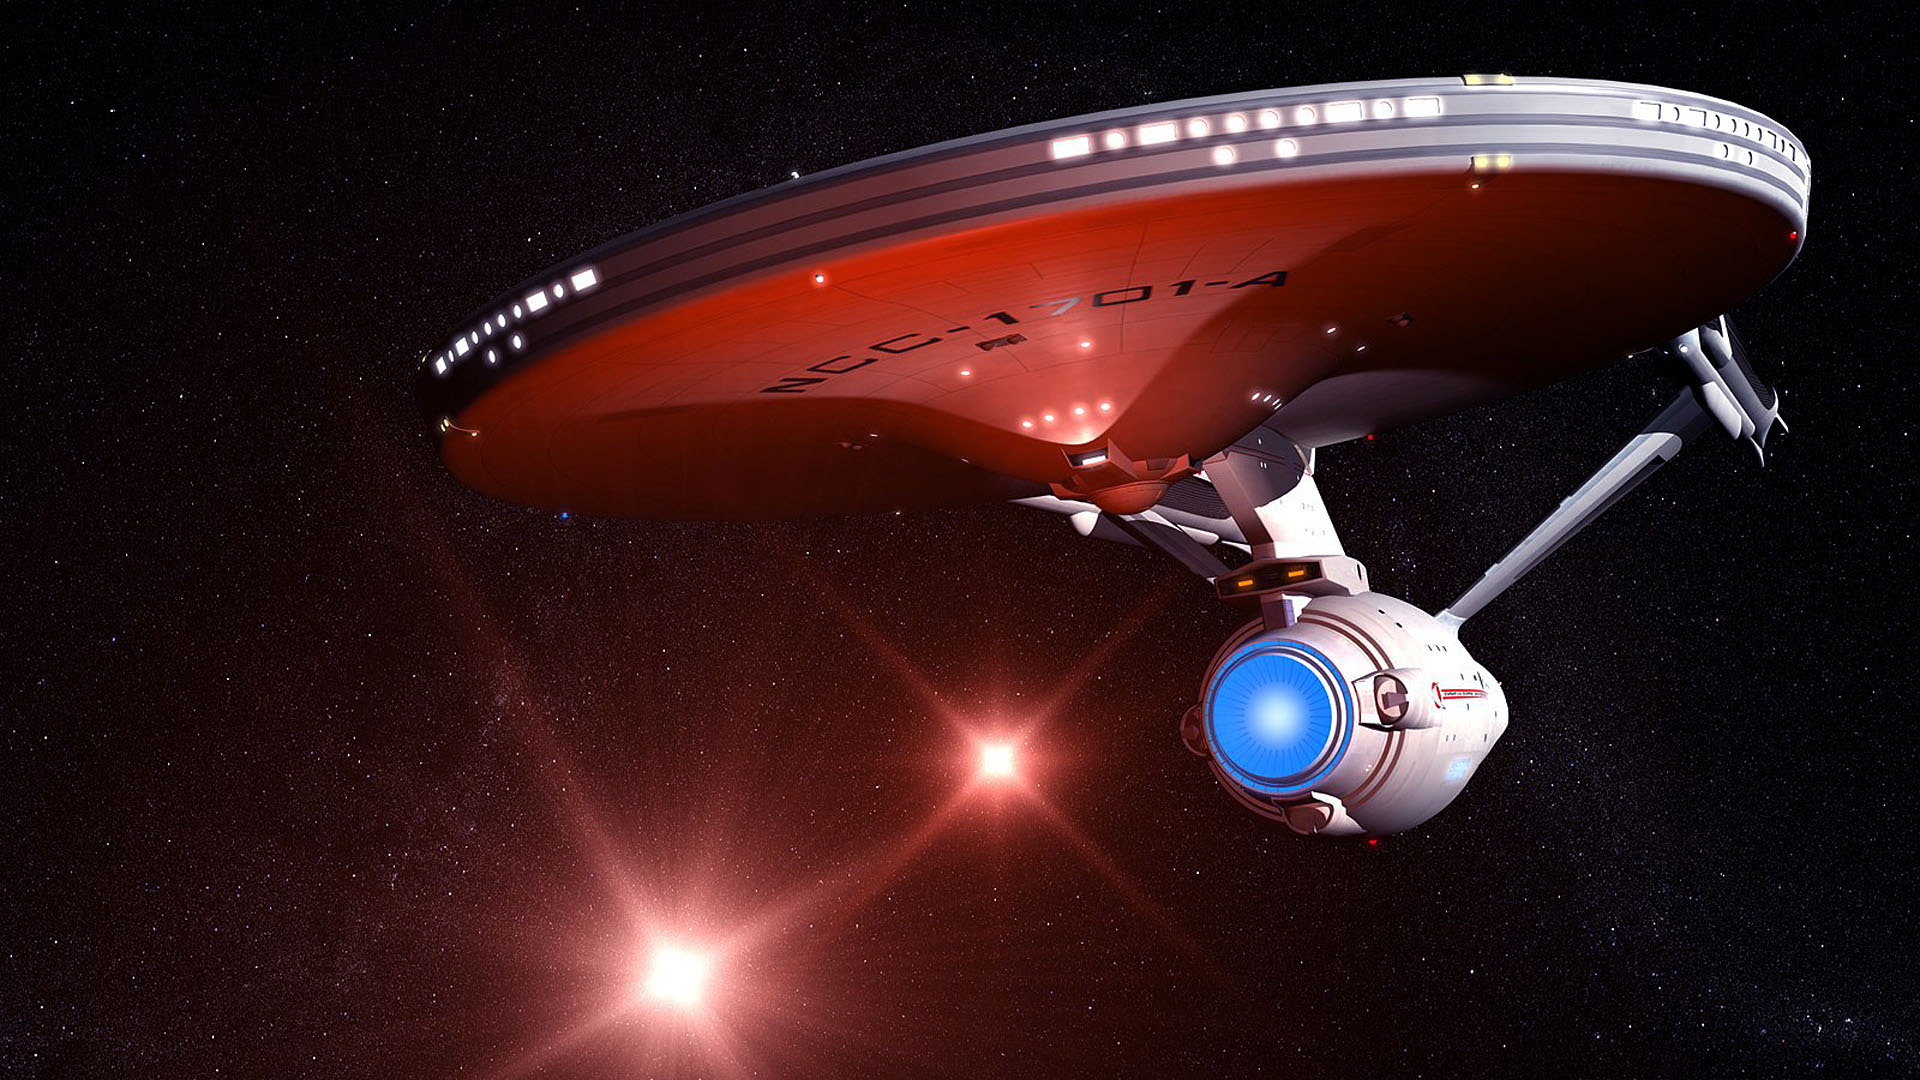 Enterprise Star Trek With Black Sky And Stars Wallpaper HD Star Trek